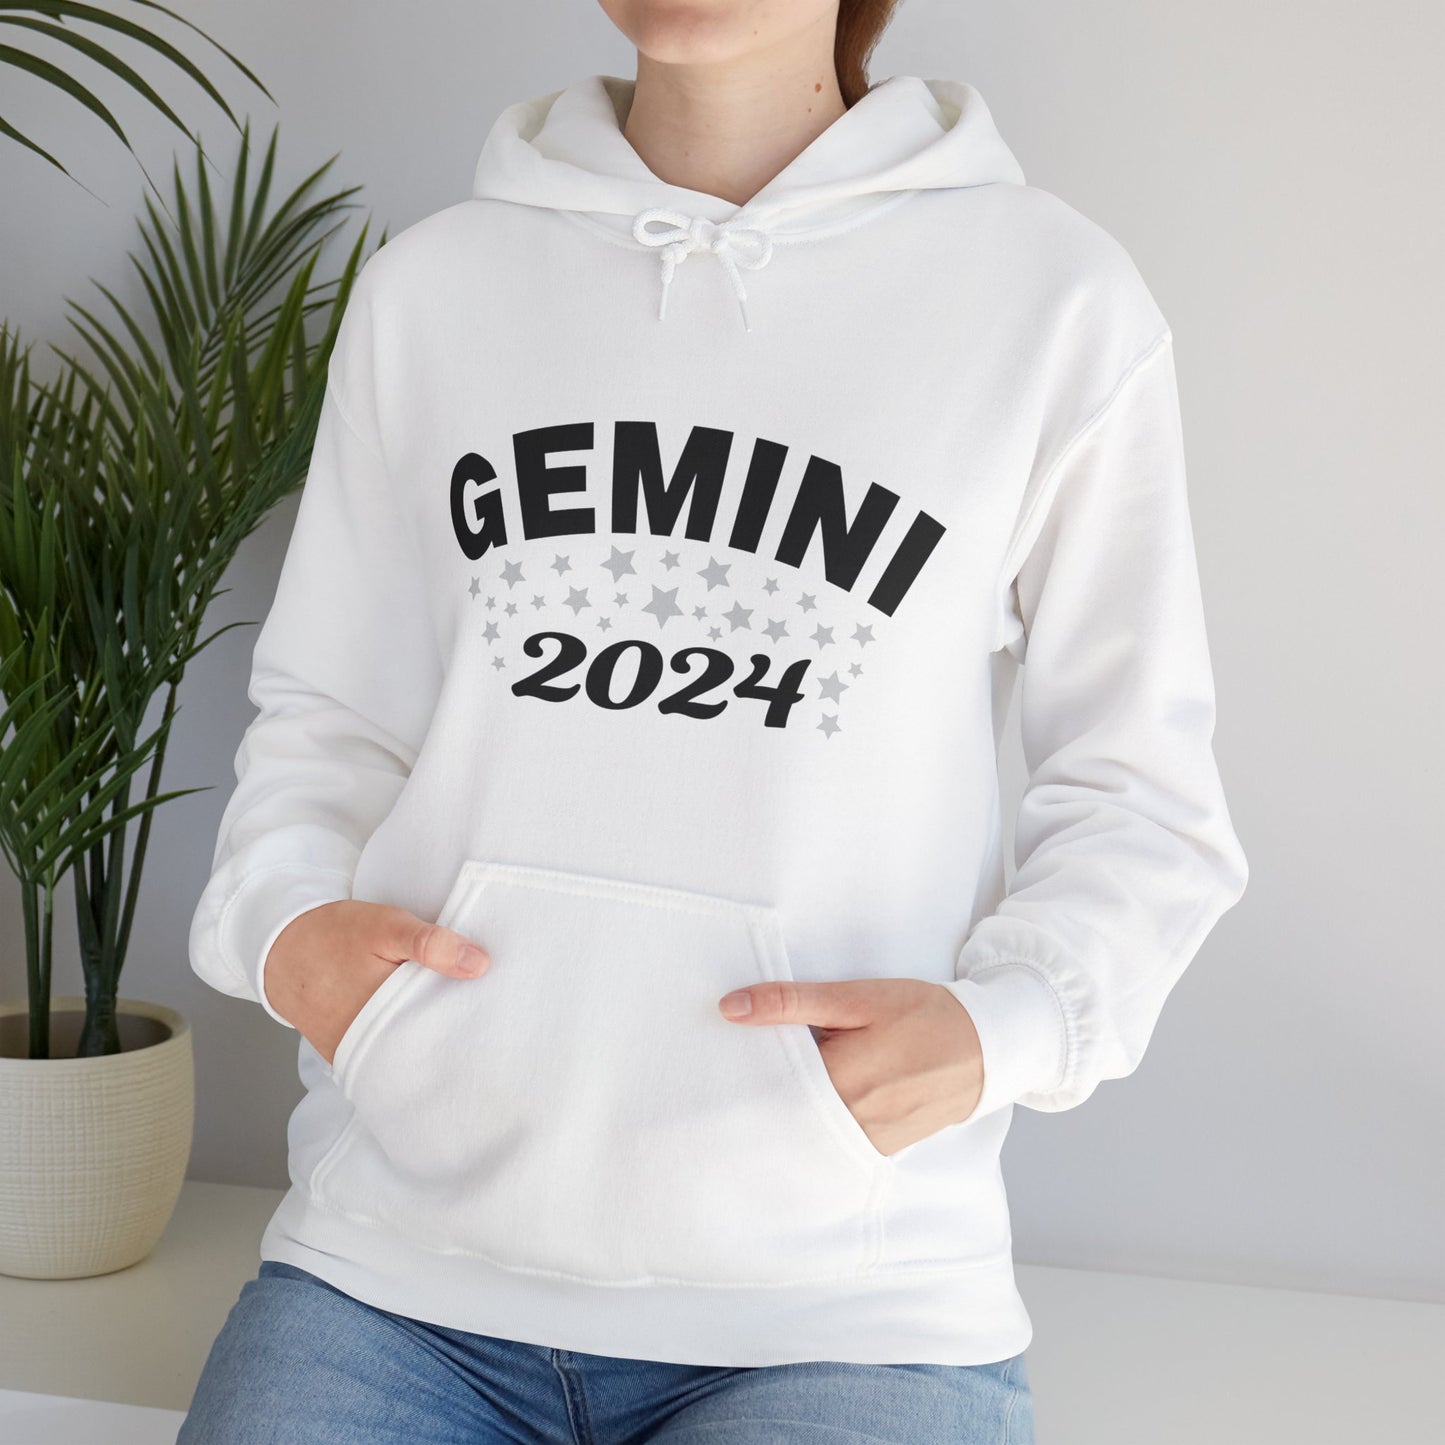 Gemini Hoodie 2024